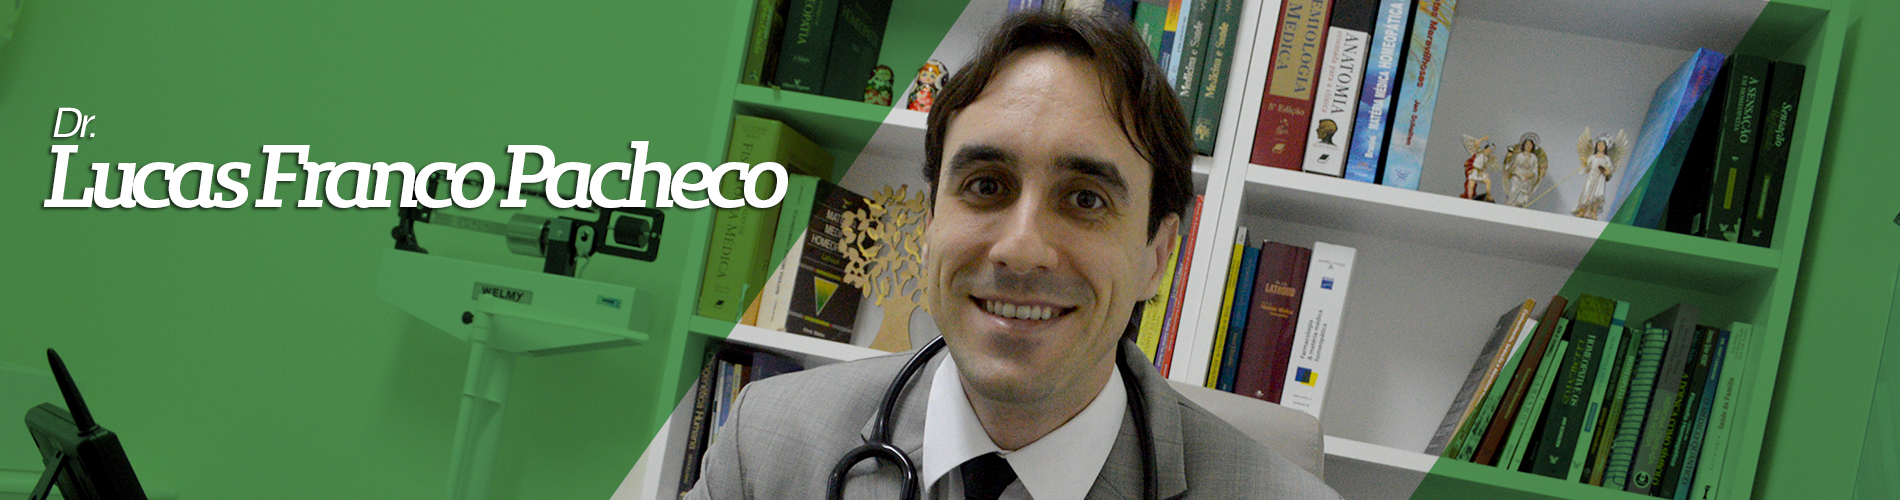 Prof. Dr. Lucas Franco Pacheco